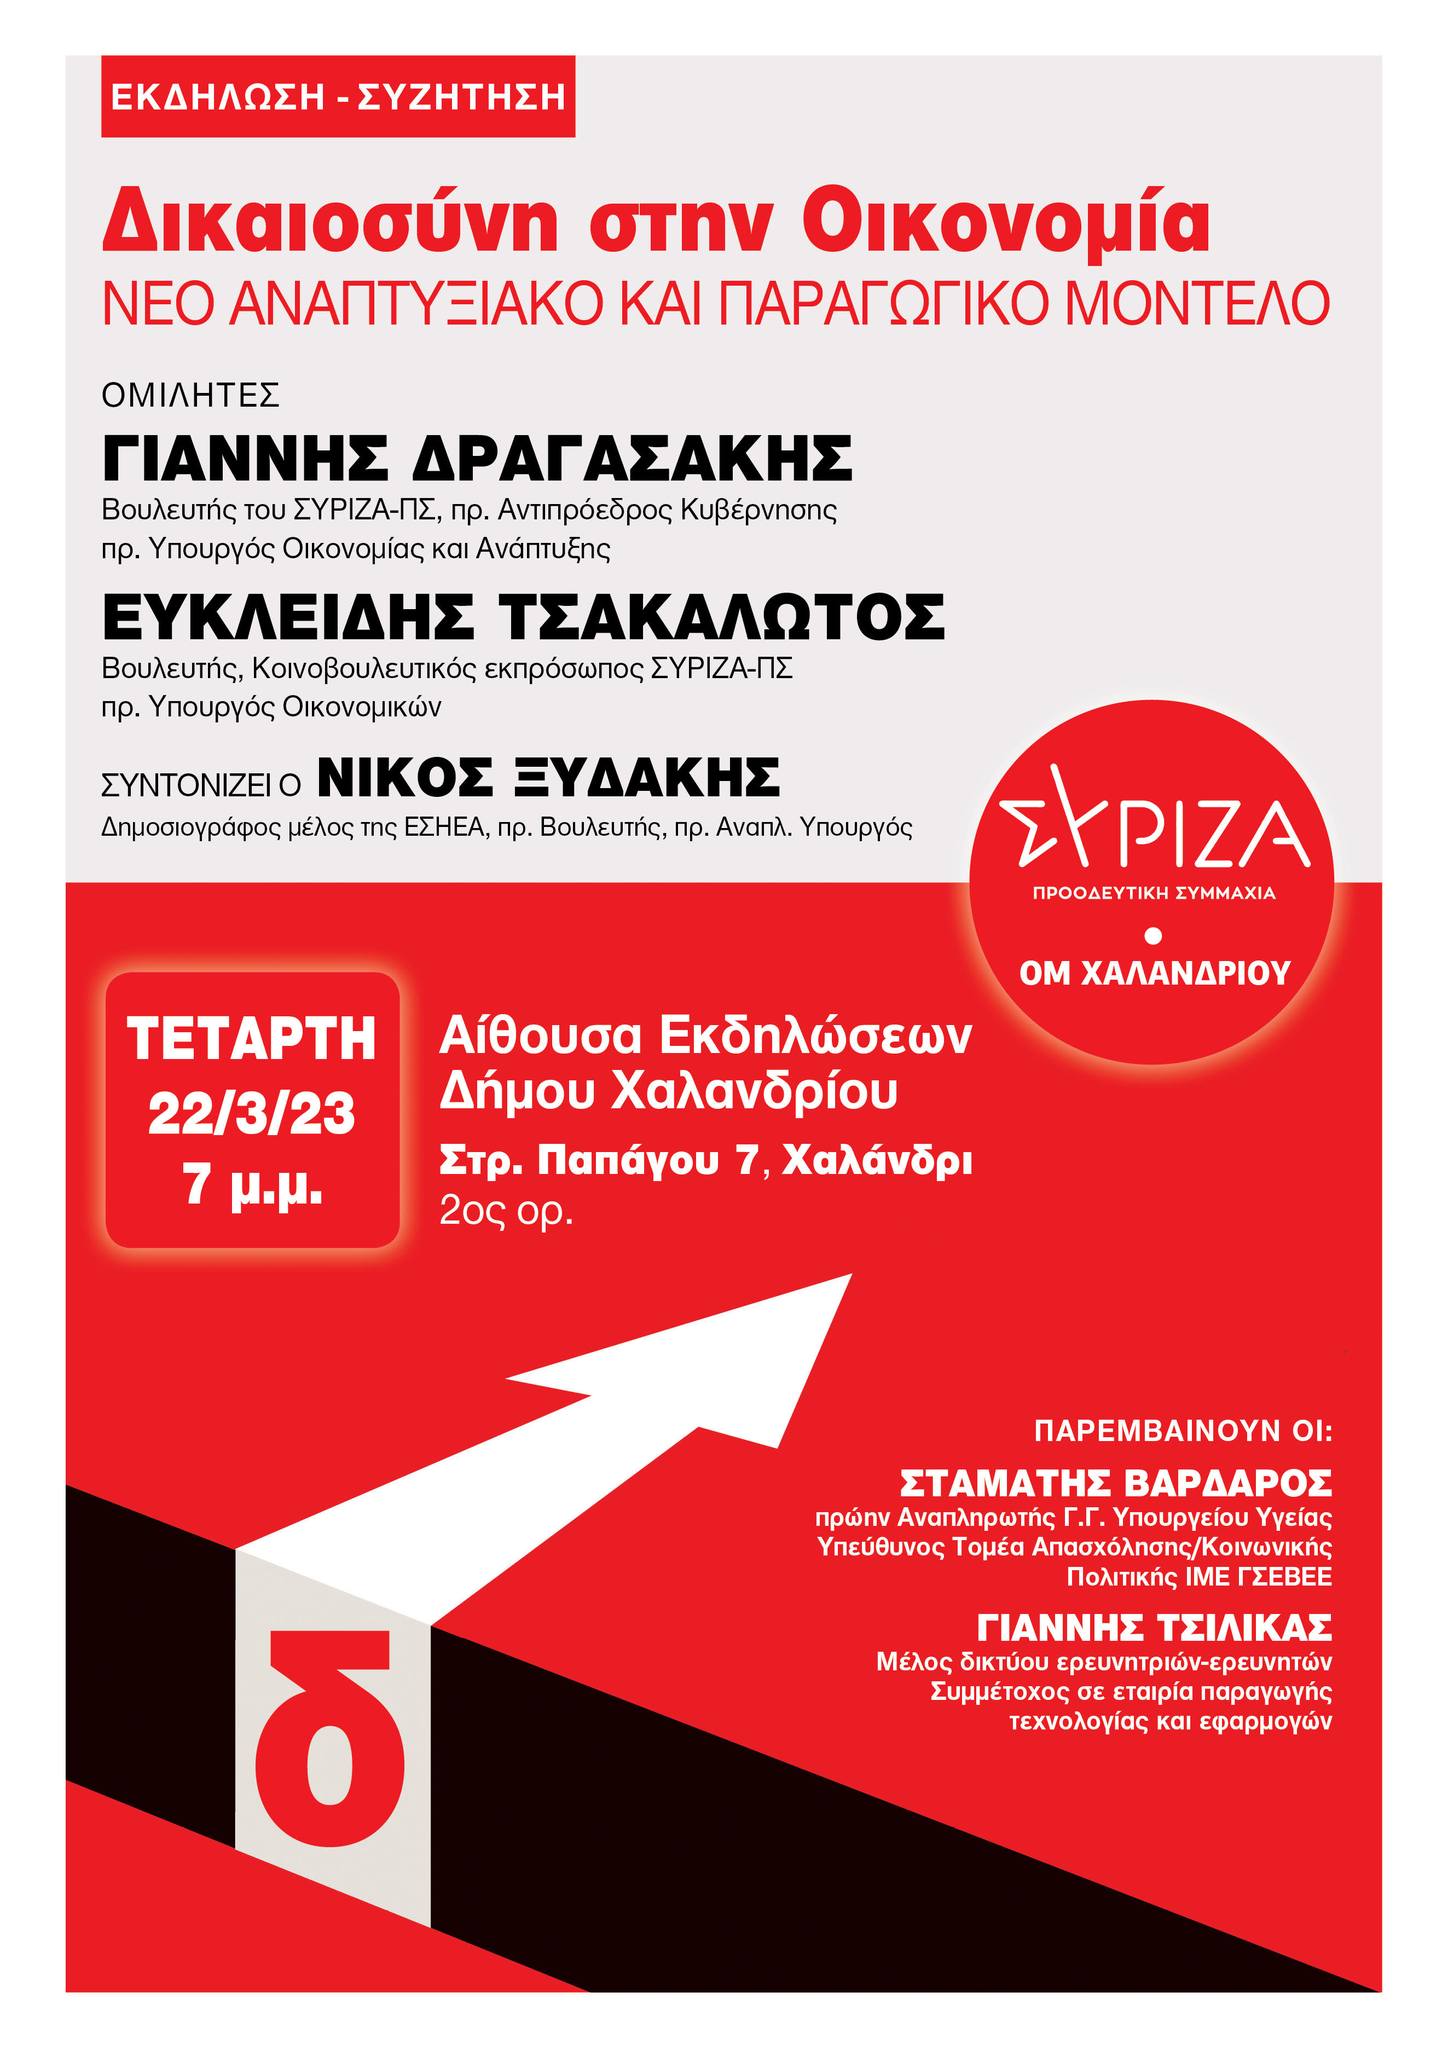 Εκδήλωση ΟΜ ΣΥΡΙΖΑ-Προοδευτική Συμμαχία Χαλανδρίου: Δικαιοσύνη στην Οικονομία-Νέο Αναπτυξιακό και Παραγωγικό πρότυπο